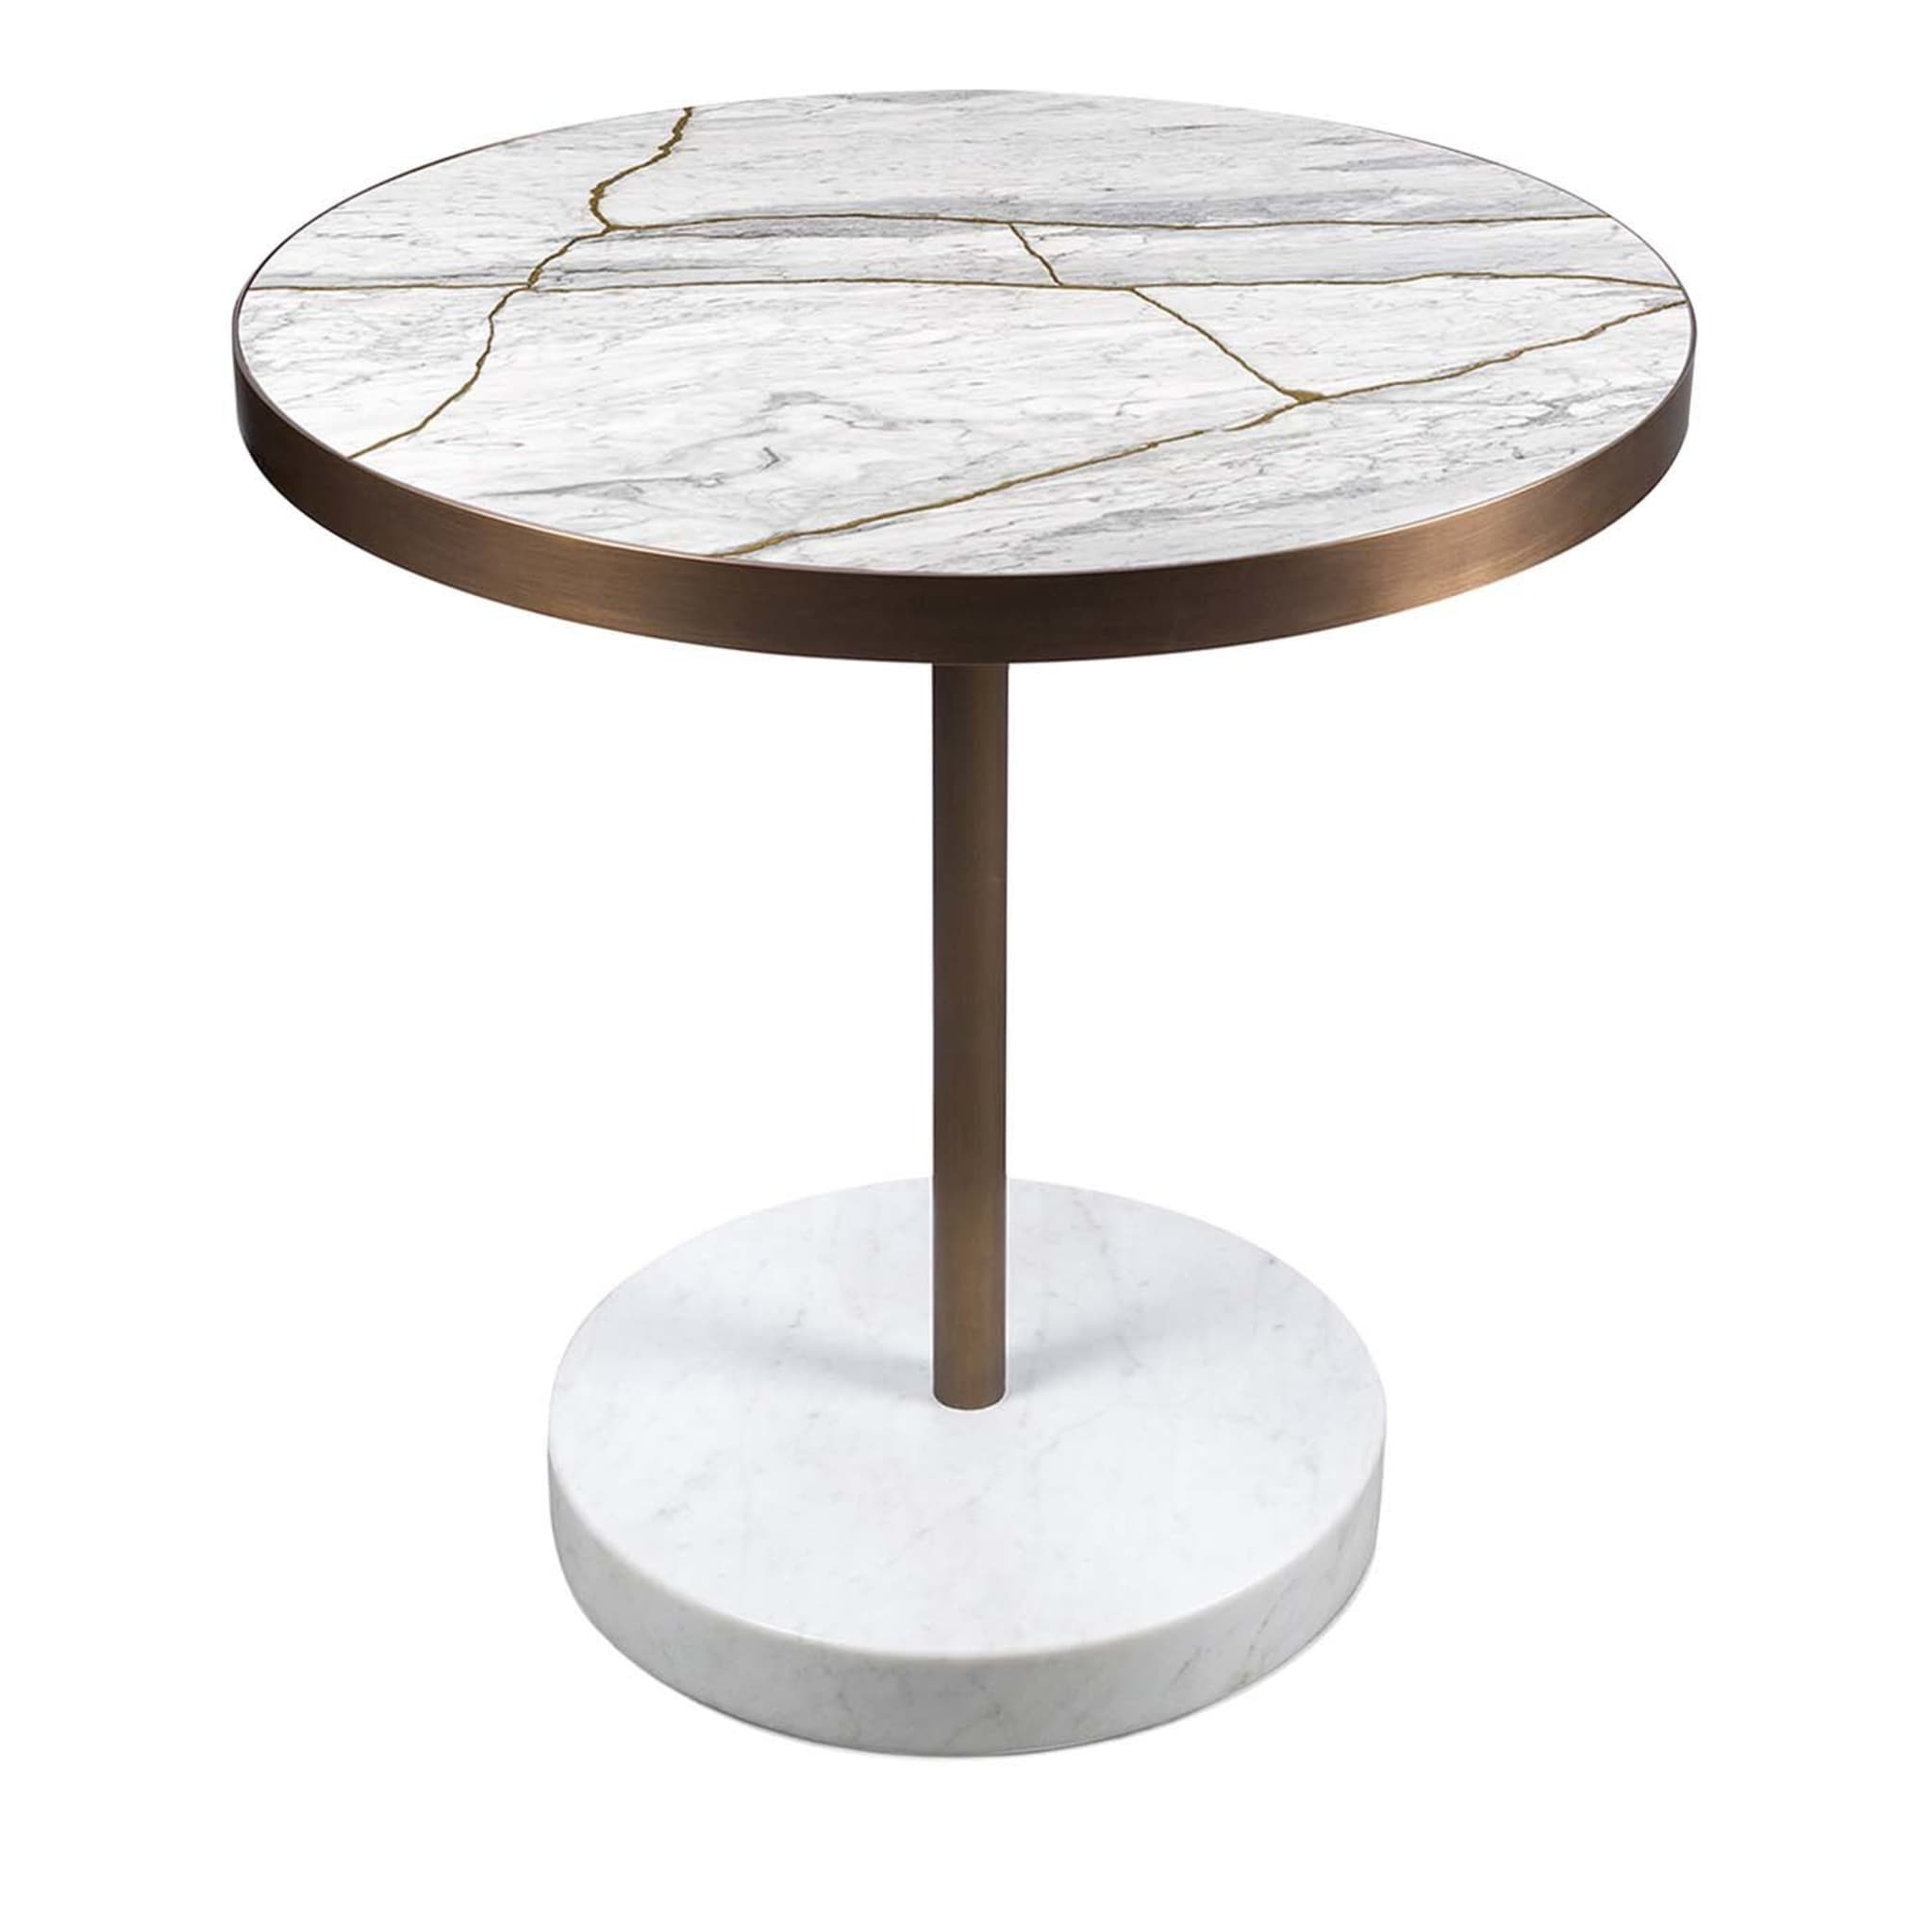 Rene Bistro Table in Bianco Nuvolato Lost Stone by Piero Lissoni - Main view